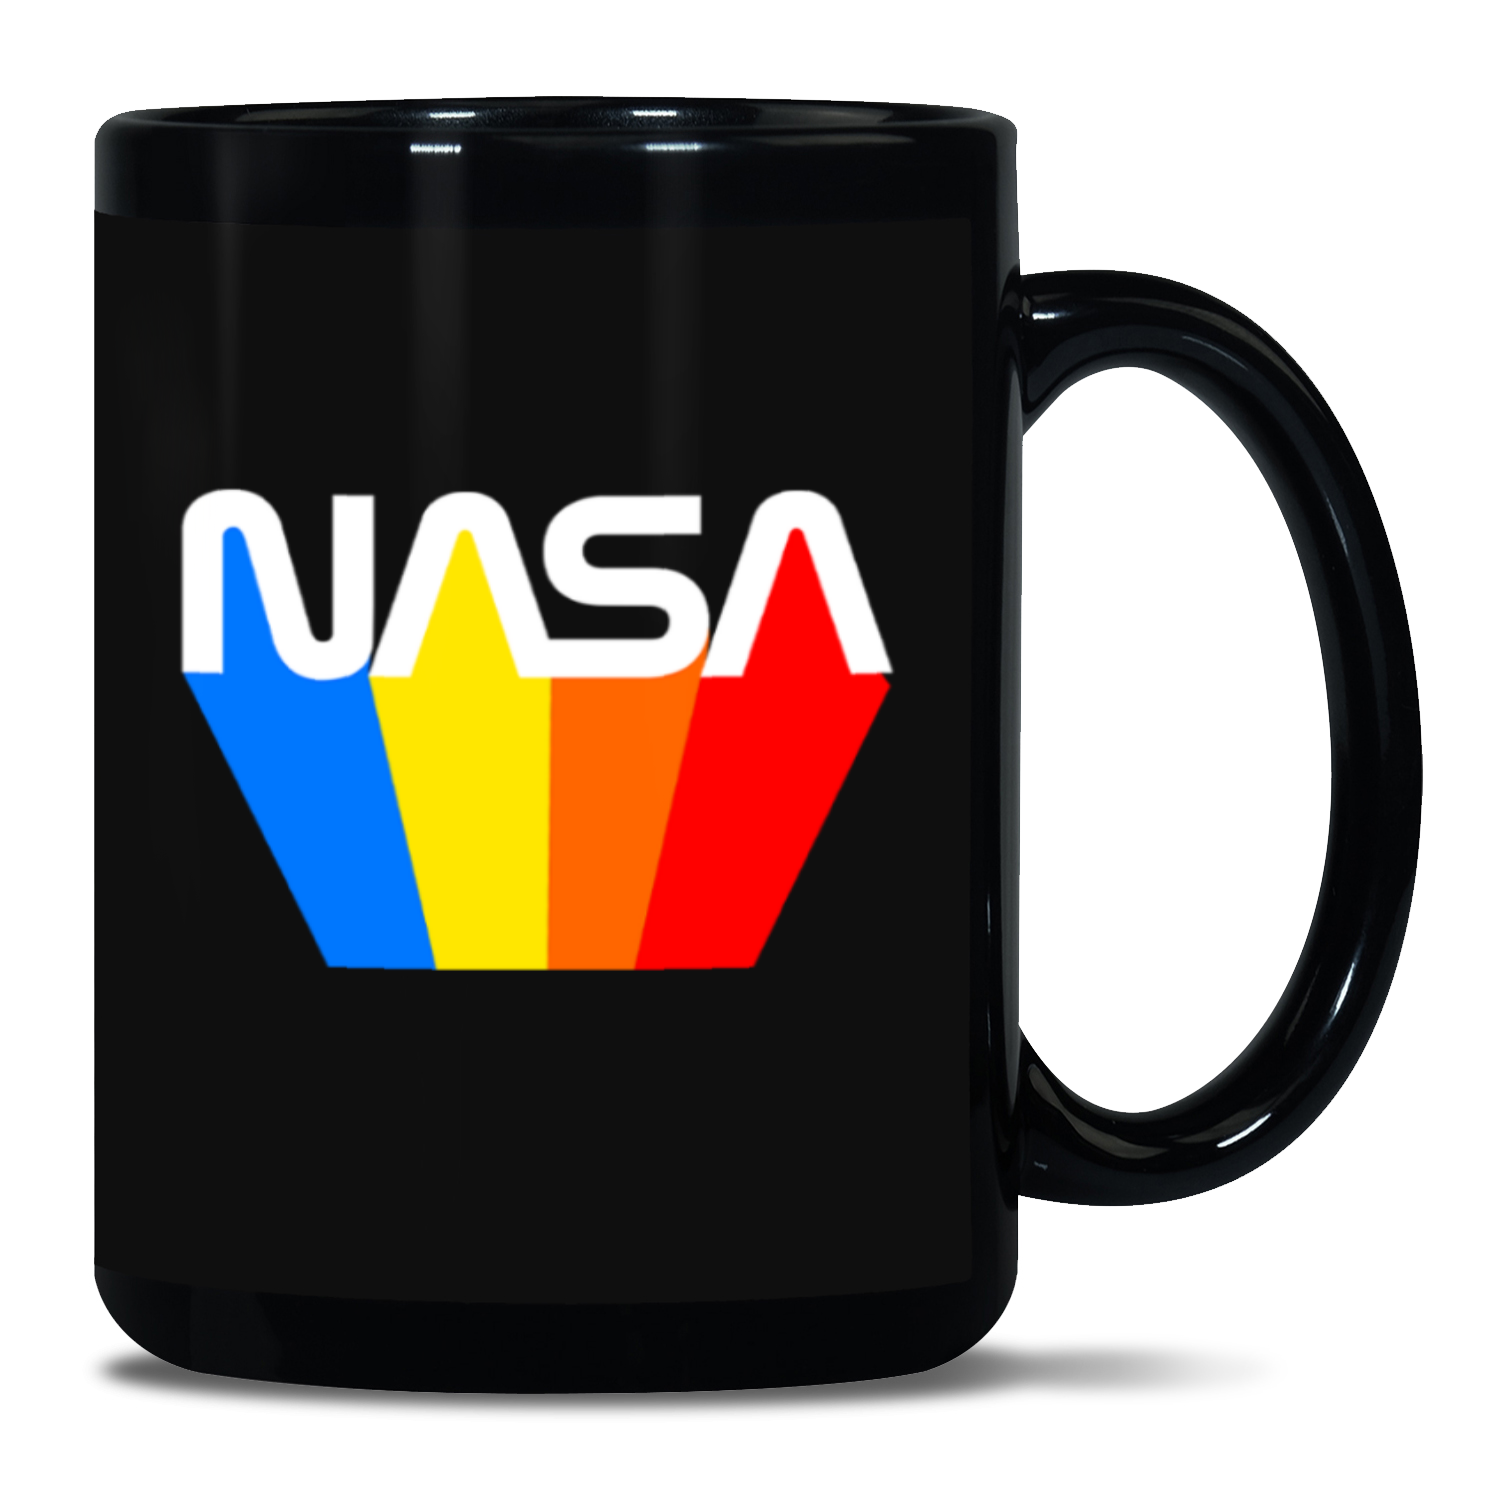 NASA 80's Retro Black Patch 15oz Mug